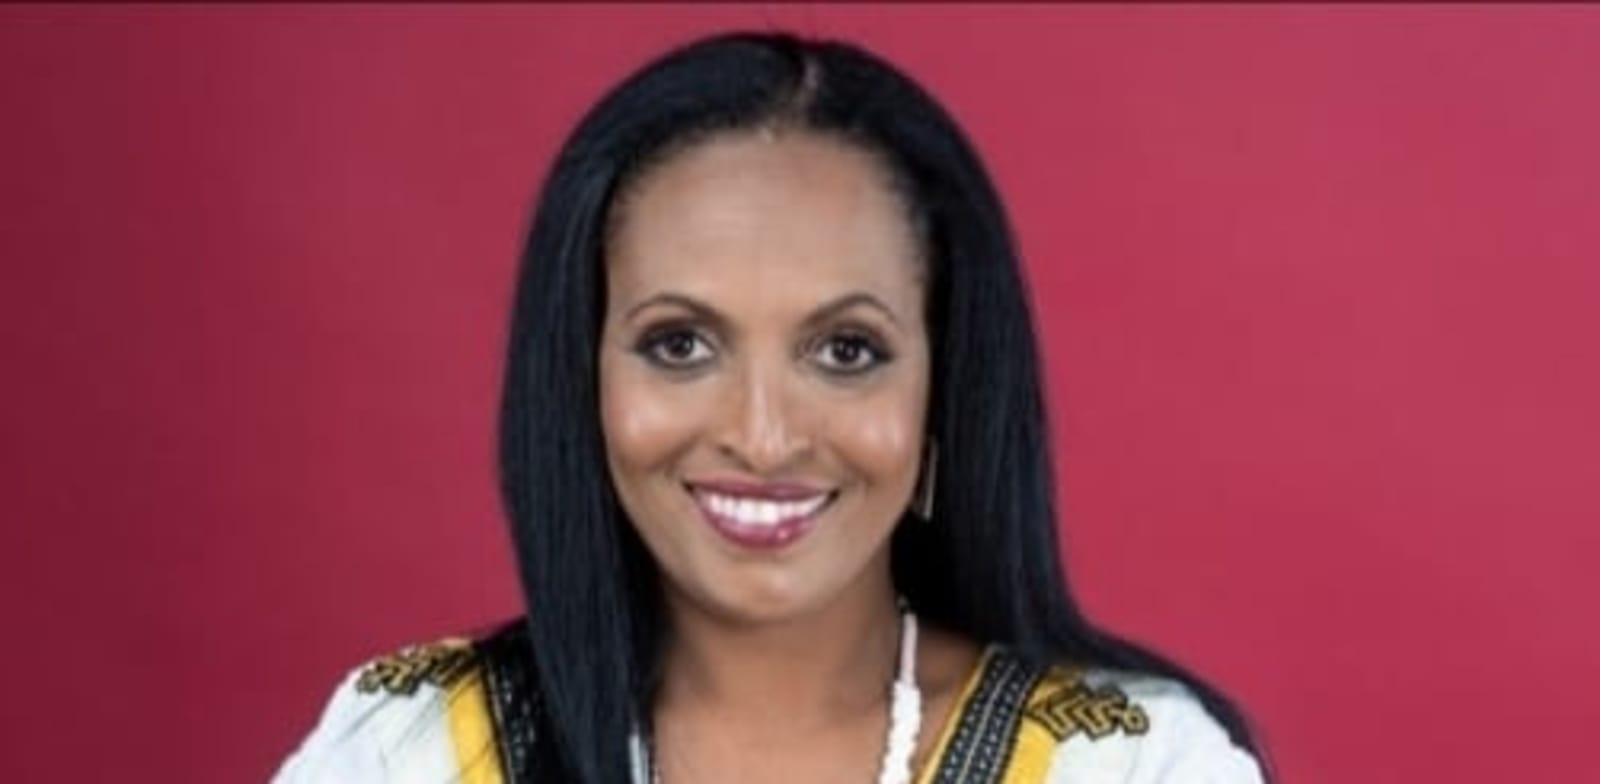 הוּלוּ־אָגֵרְש (רבקה) ברקולי־בינסיי, יזמת והבעלים של האתר ''סוד הקסם של המטבח האתיופי'' / צילום: מיטל אזולאי, סטודיו הפנינה